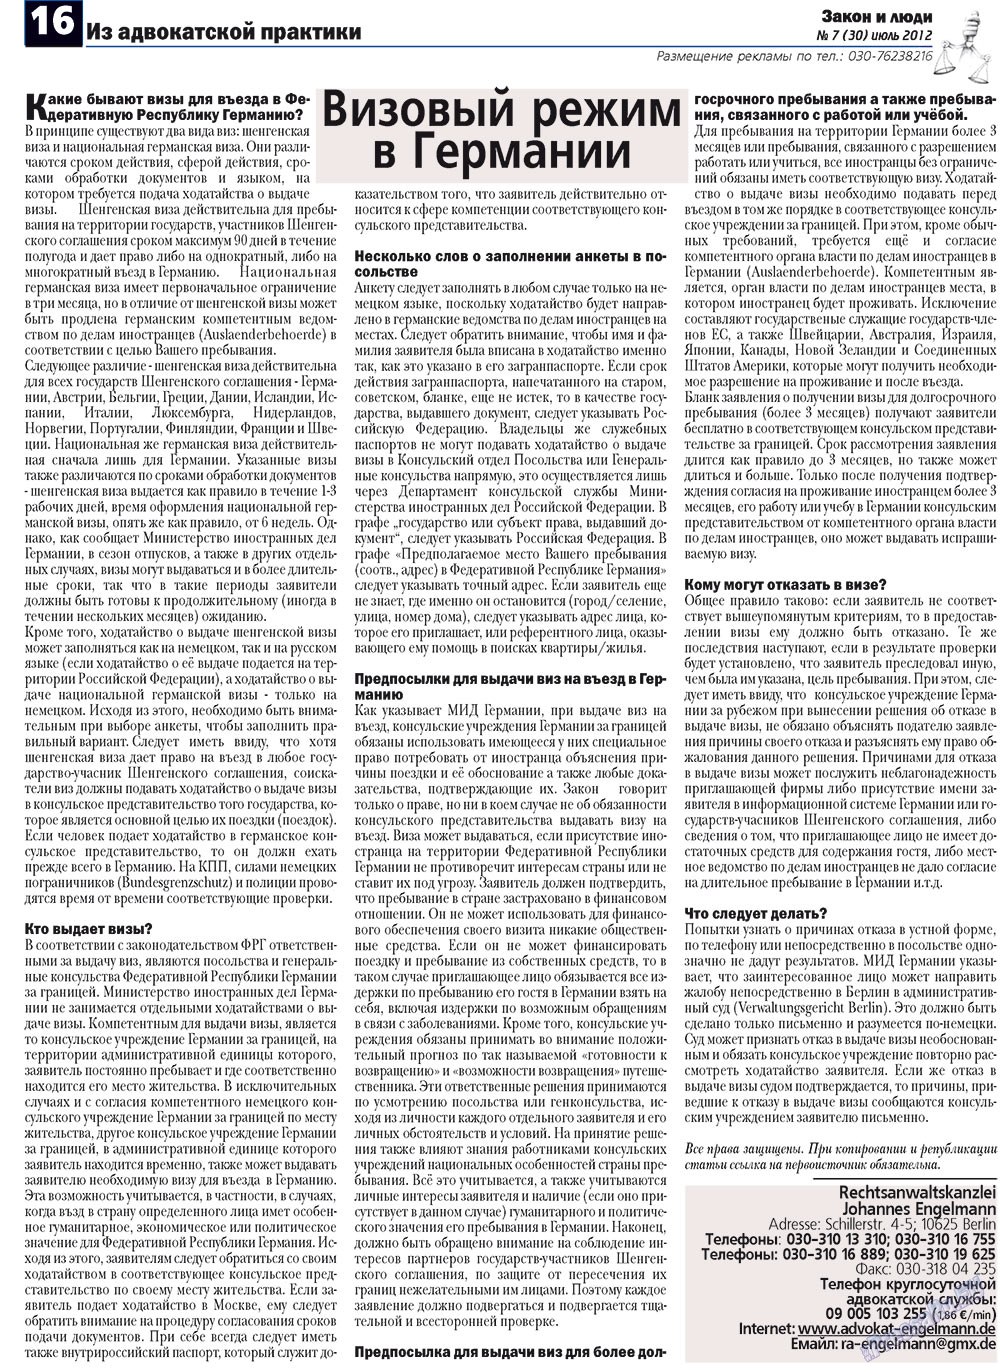 Закон и люди (газета). 2012 год, номер 7, стр. 16